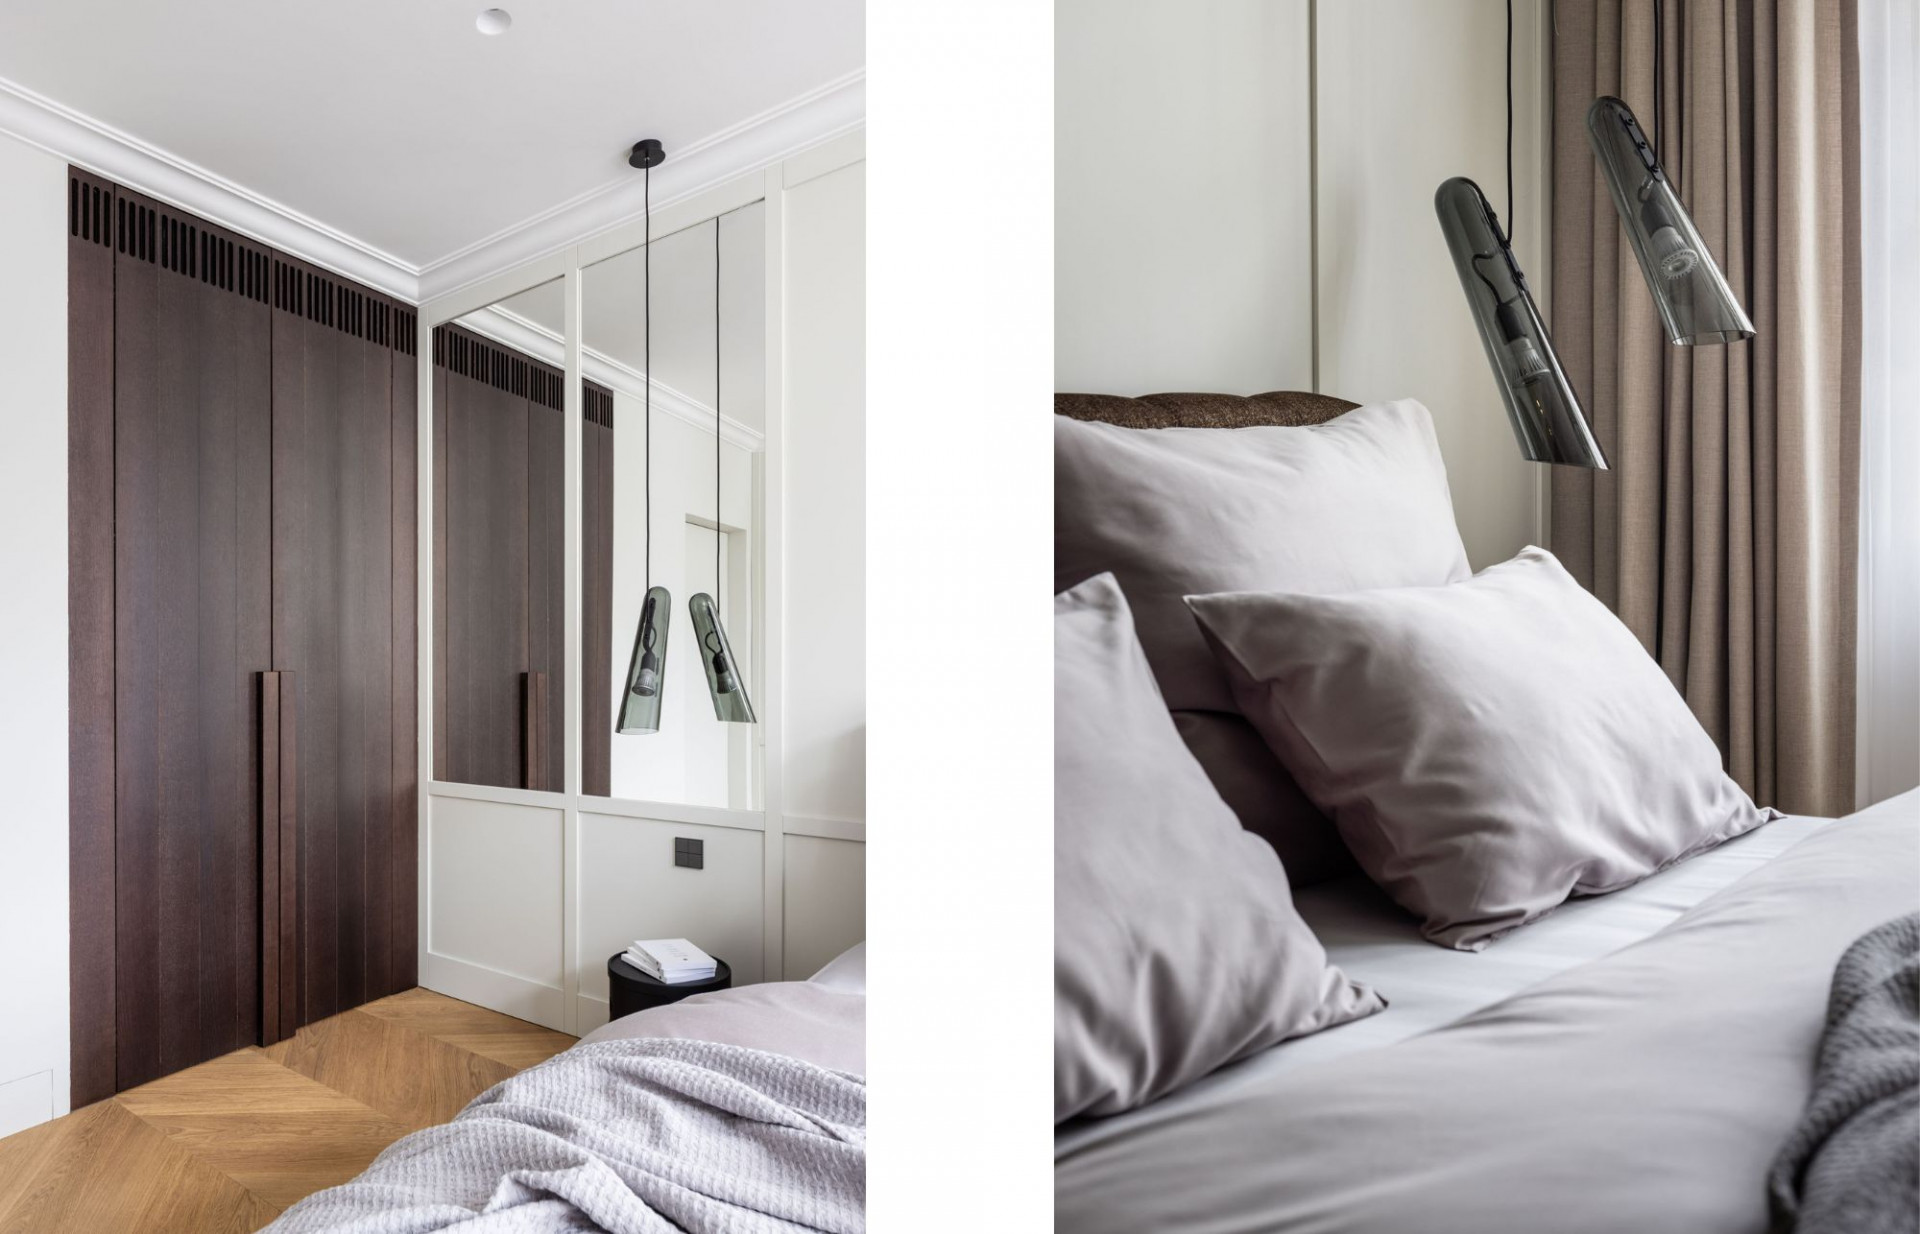 Lejaan’s grey bed linen complements the bedroom soft tone design.